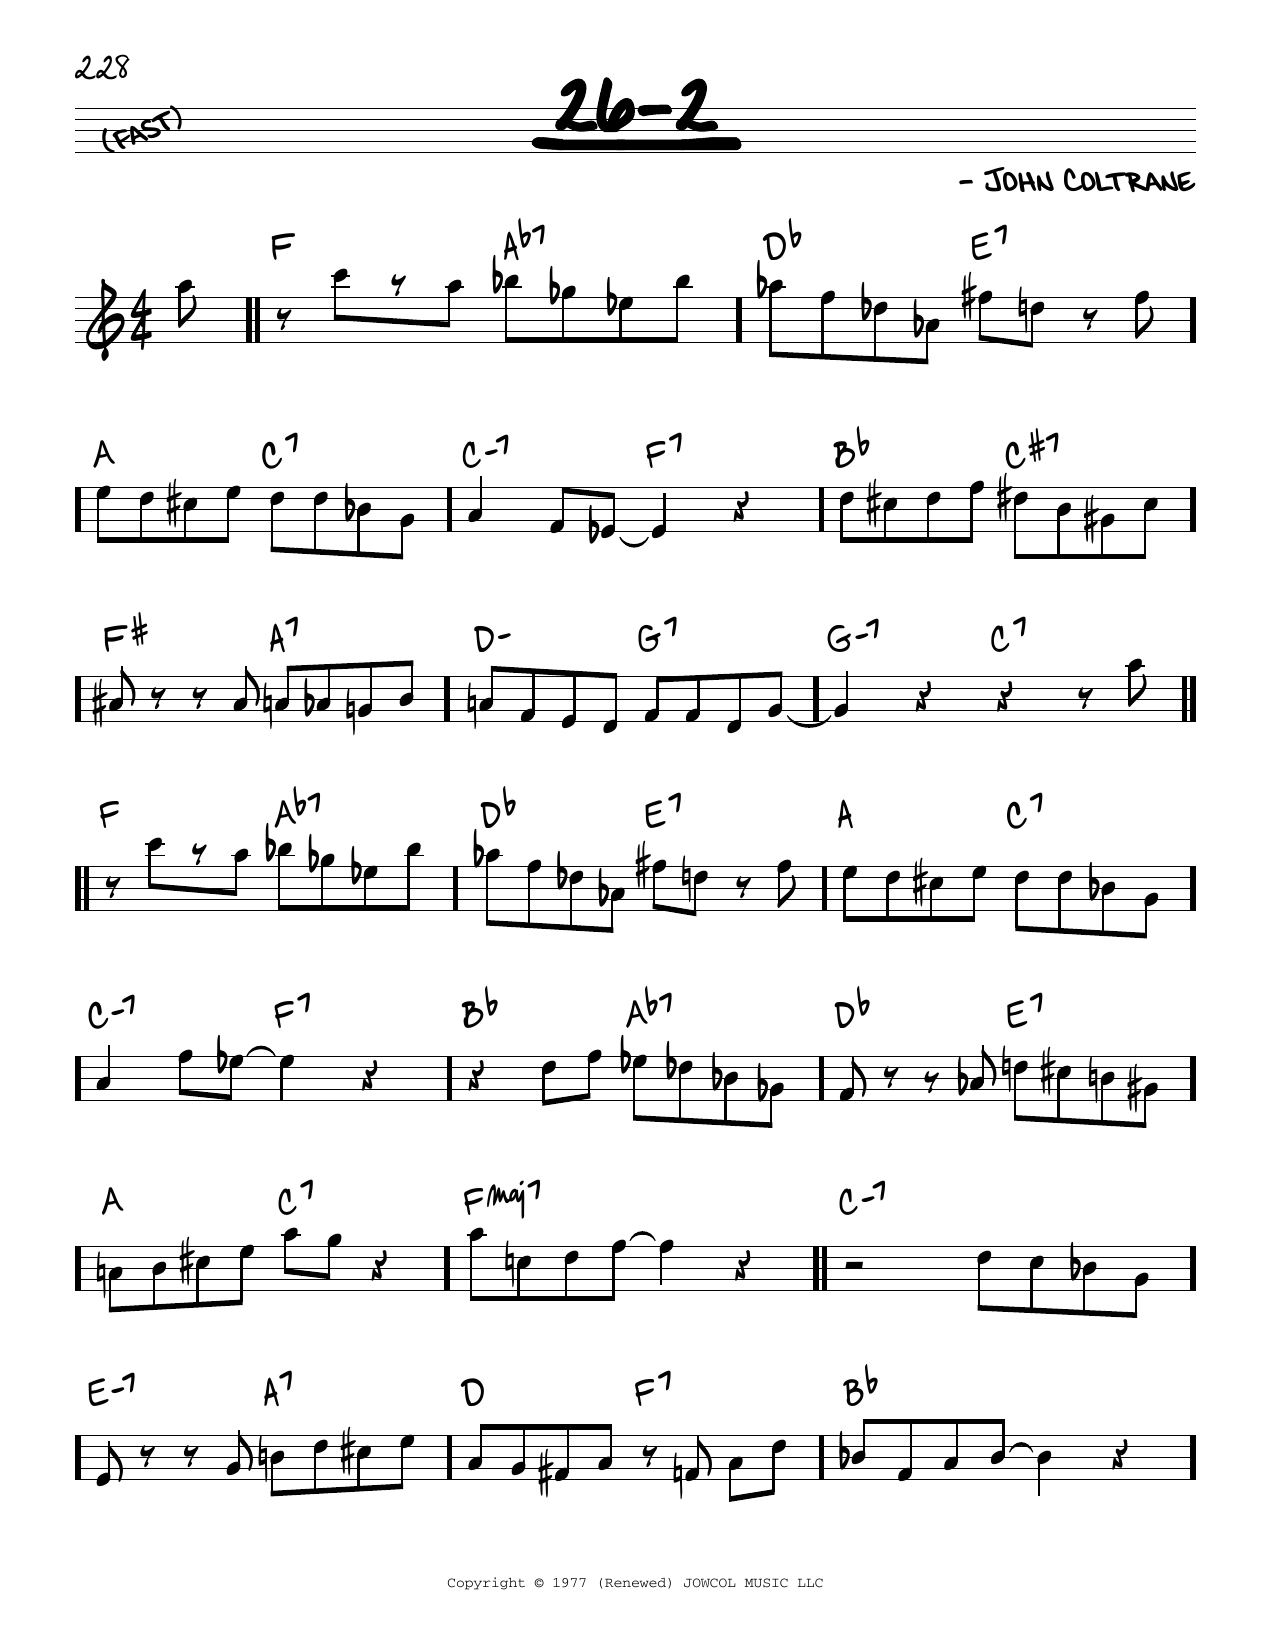 Download John Coltrane 26-2 Sheet Music